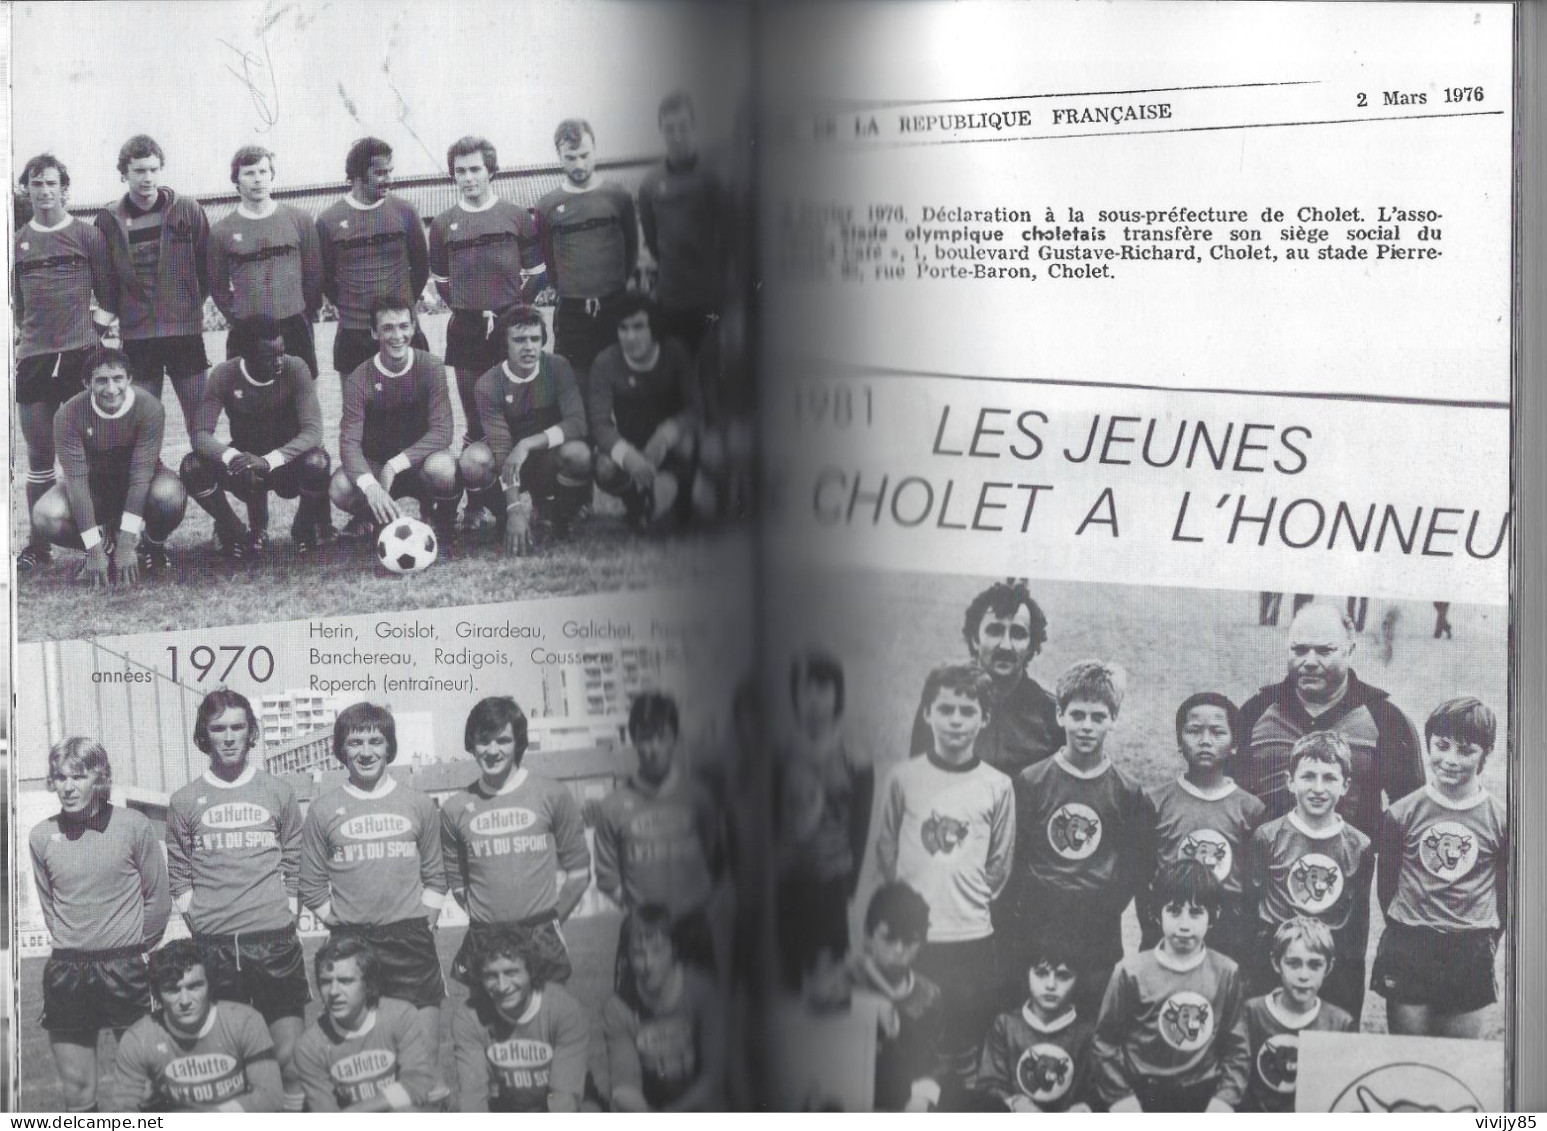 49 - CHOLET - T.Beau Livre Illustré De 253 Pages " Le Stade Olympique Choletais D'hier à Aujurd'hui " - 2007 - Pays De Loire